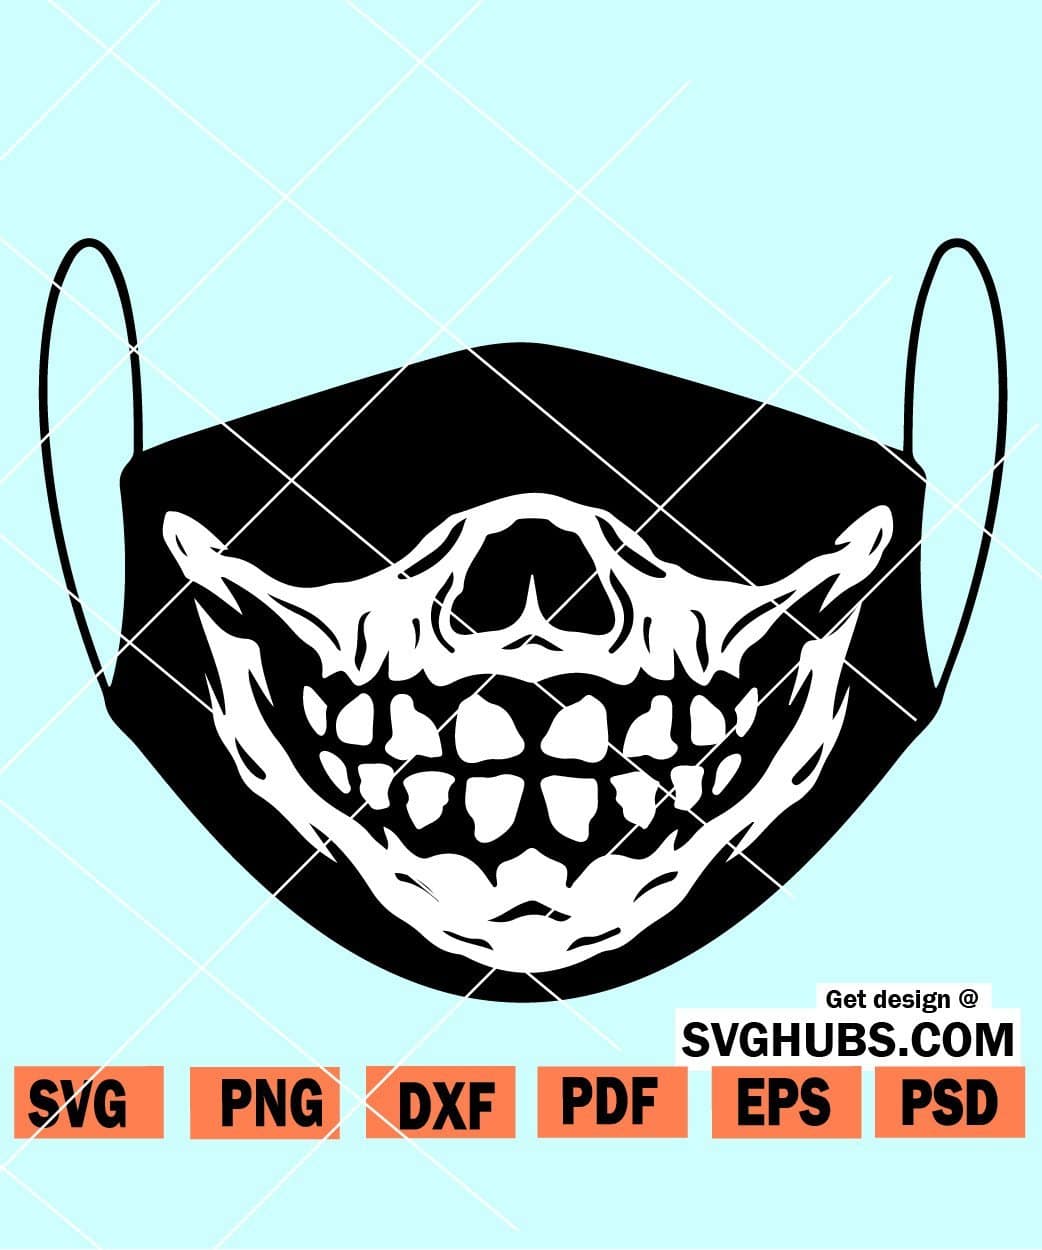 Download Skull Face Mask Svg Skull Mask Svg Skeleton Mask Svg Funny Face Mask Design Svg Hubs